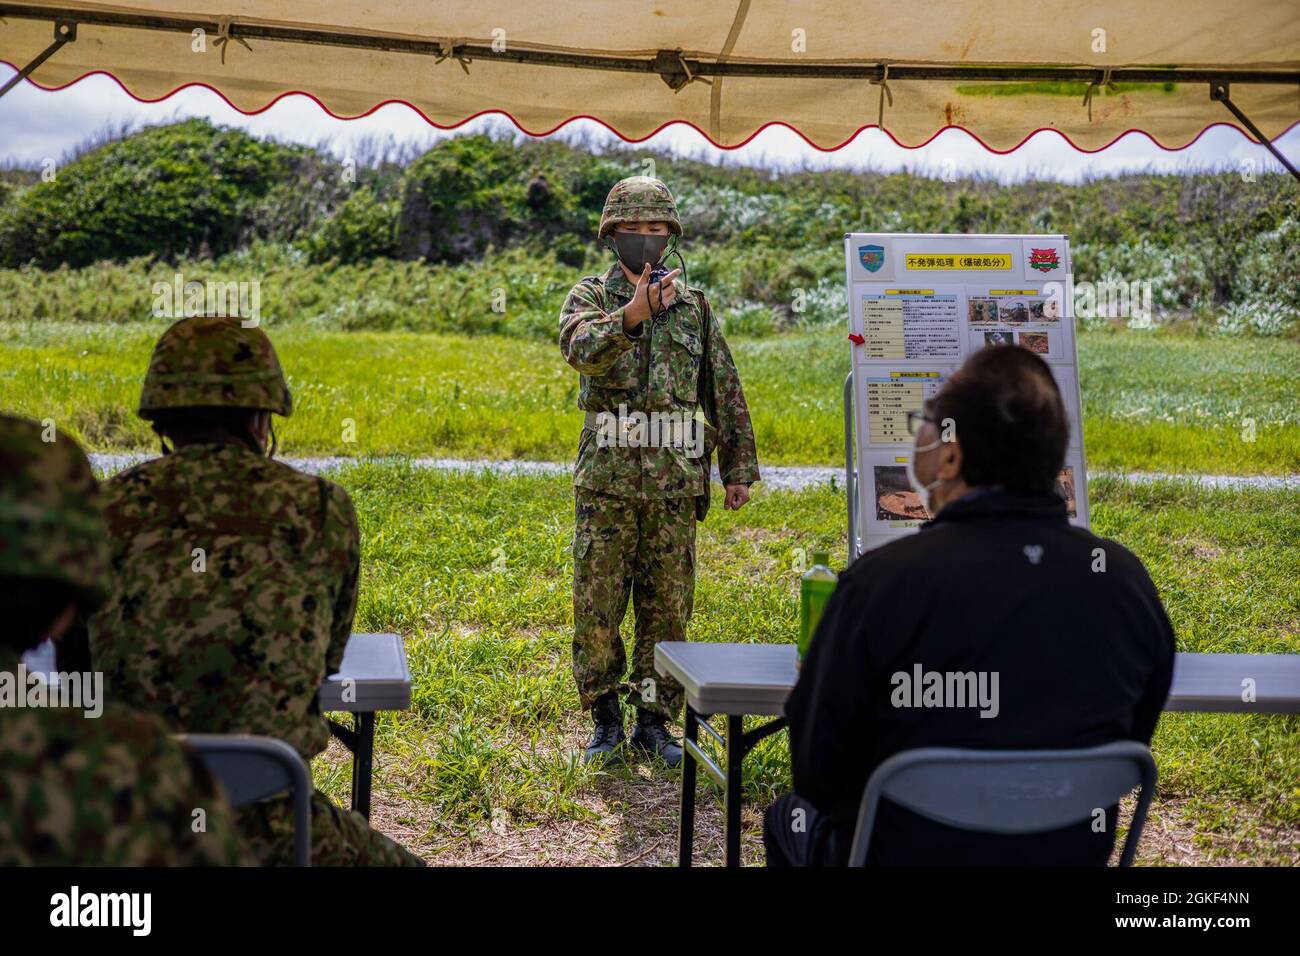 Japan Ground Self-Defense Force (JGSDF) Sgt. Takashi Kawahara, ein Techniker für die Entsorgung explosiver Kampfstoffe (EOD) mit der 101. Explosionsentsorgungseinheit, führt den letzten Countdown zur Entsorgung auf der IE Shima Training Facility (ISTF), Okinawa, Japan, durch, 6. April 2021. In den letzten fünf Jahren wurde auf Iejima gefundene, nicht explodierte Sprengkörper in Erwartung der Zerstörung gelagert. Auf Antrag des Bürgermeisters des IE-Dorfes führten JGSDF und die Entsorgungstechniker des Marine Corps Base Butler EOD kombinierte Operationen durch, um diese Gefahren zu zerstören. ISTF ist der einzige aktive Abbruchbereich an Bord von Iejima, wo der Operat Stockfoto